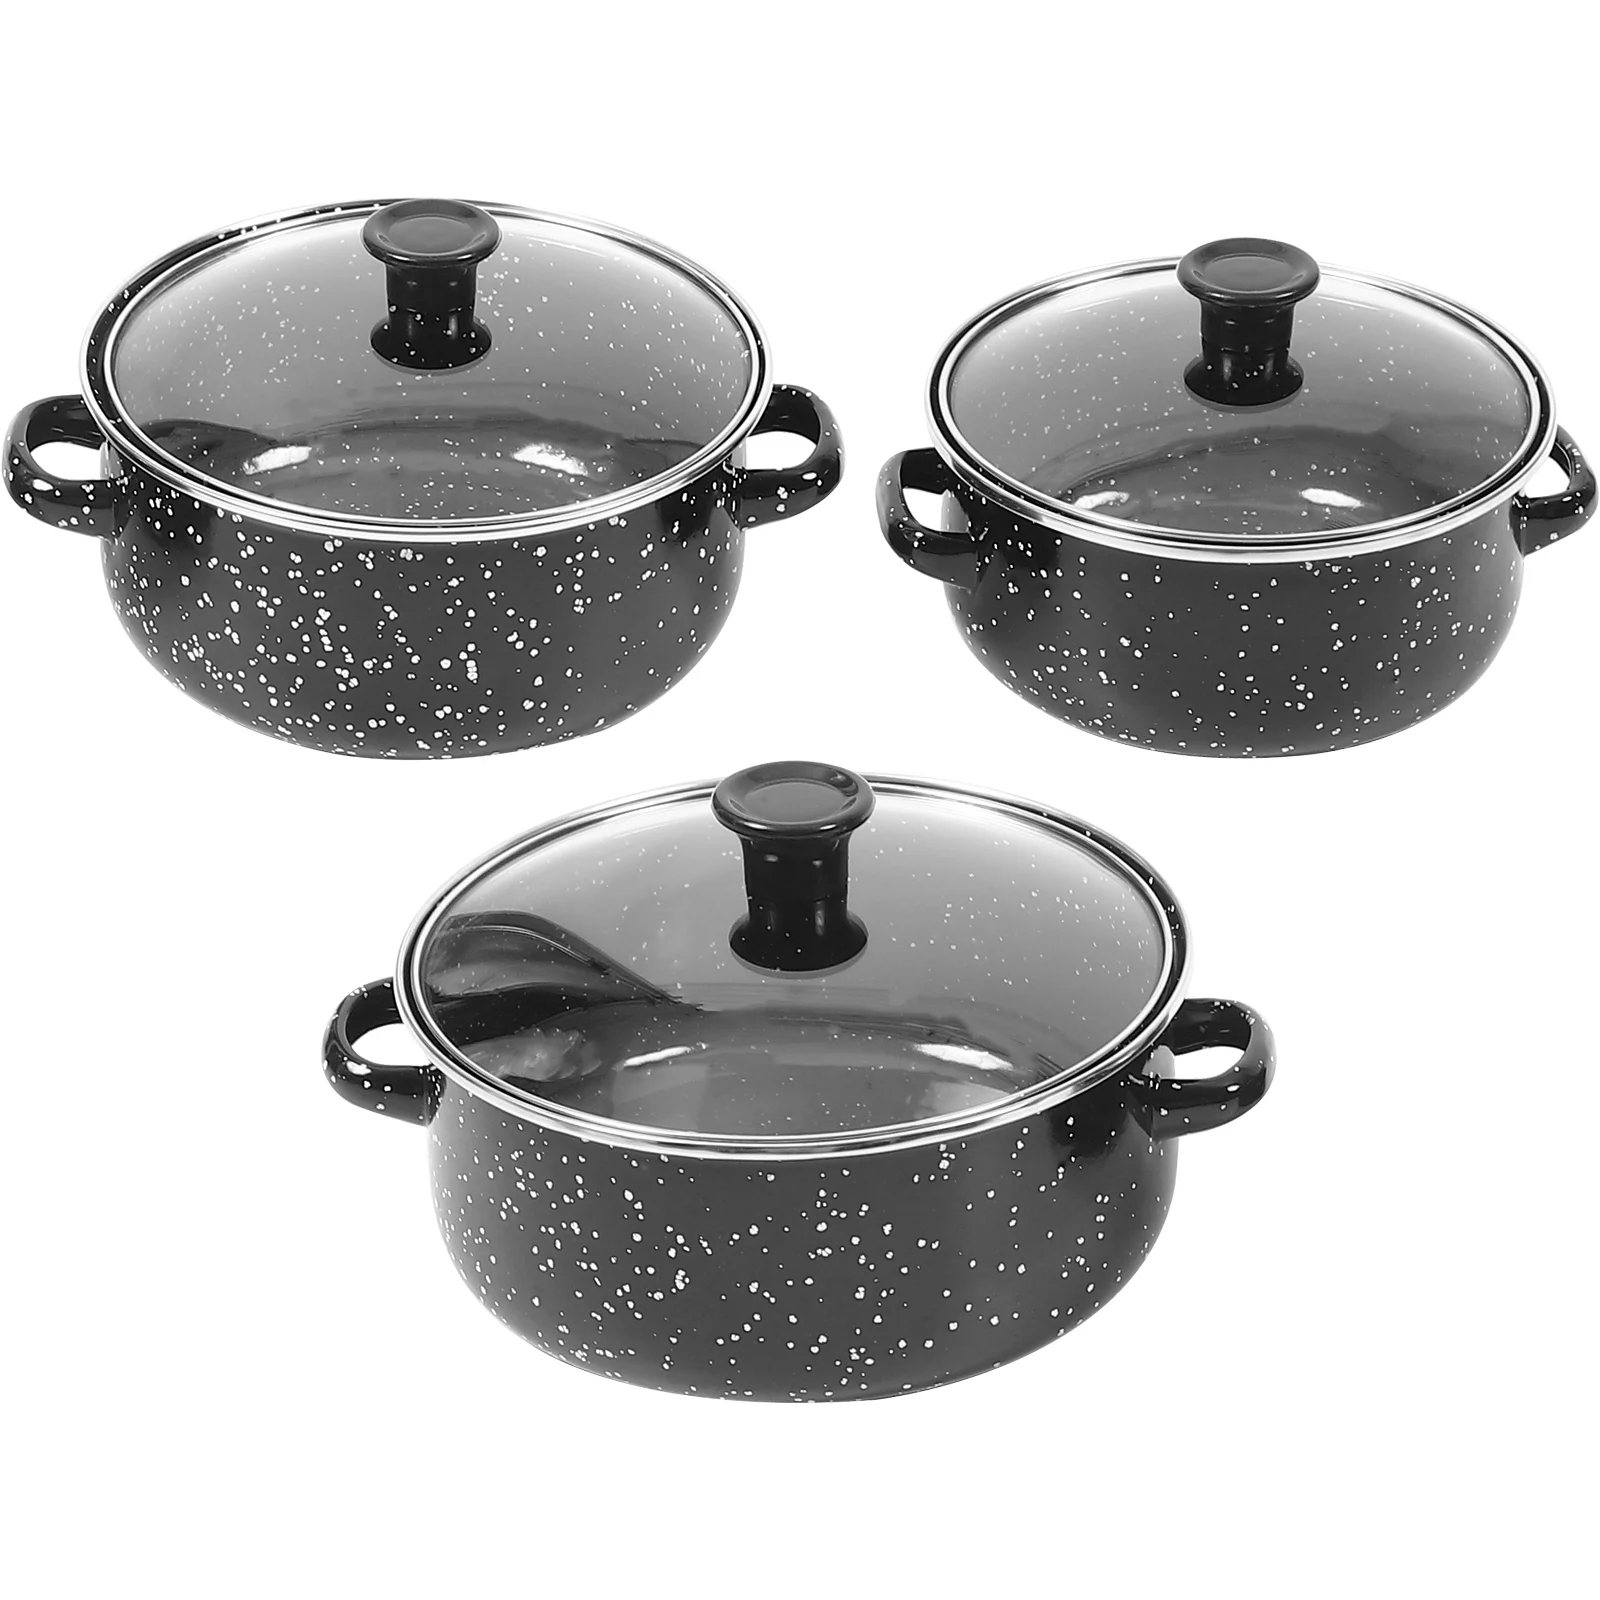 

1set/3pcs Soup Pot Frying Pan Hot Pot Saucepan Stockpot Enamel Cook Stock Pot Instant Noodle Pot With Lid Kitchen Cook Cookware